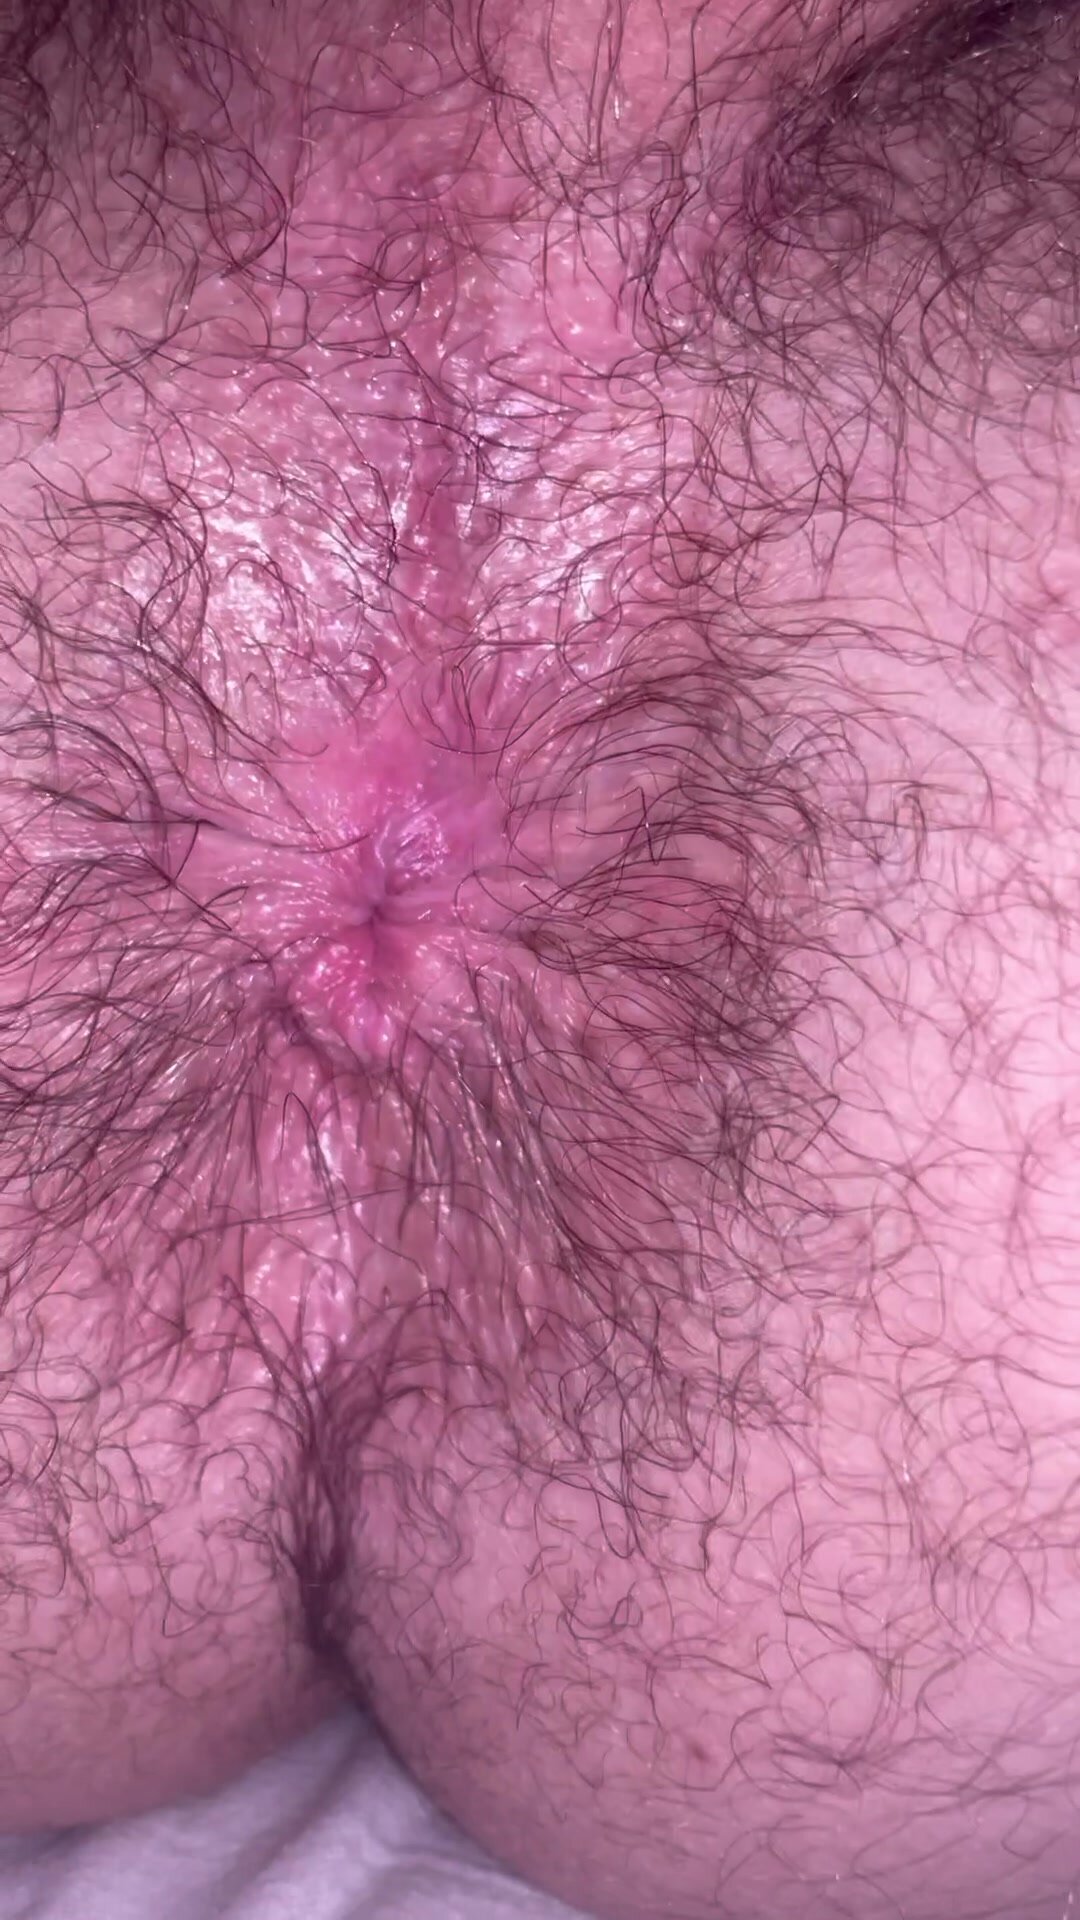 Musky hairy hole